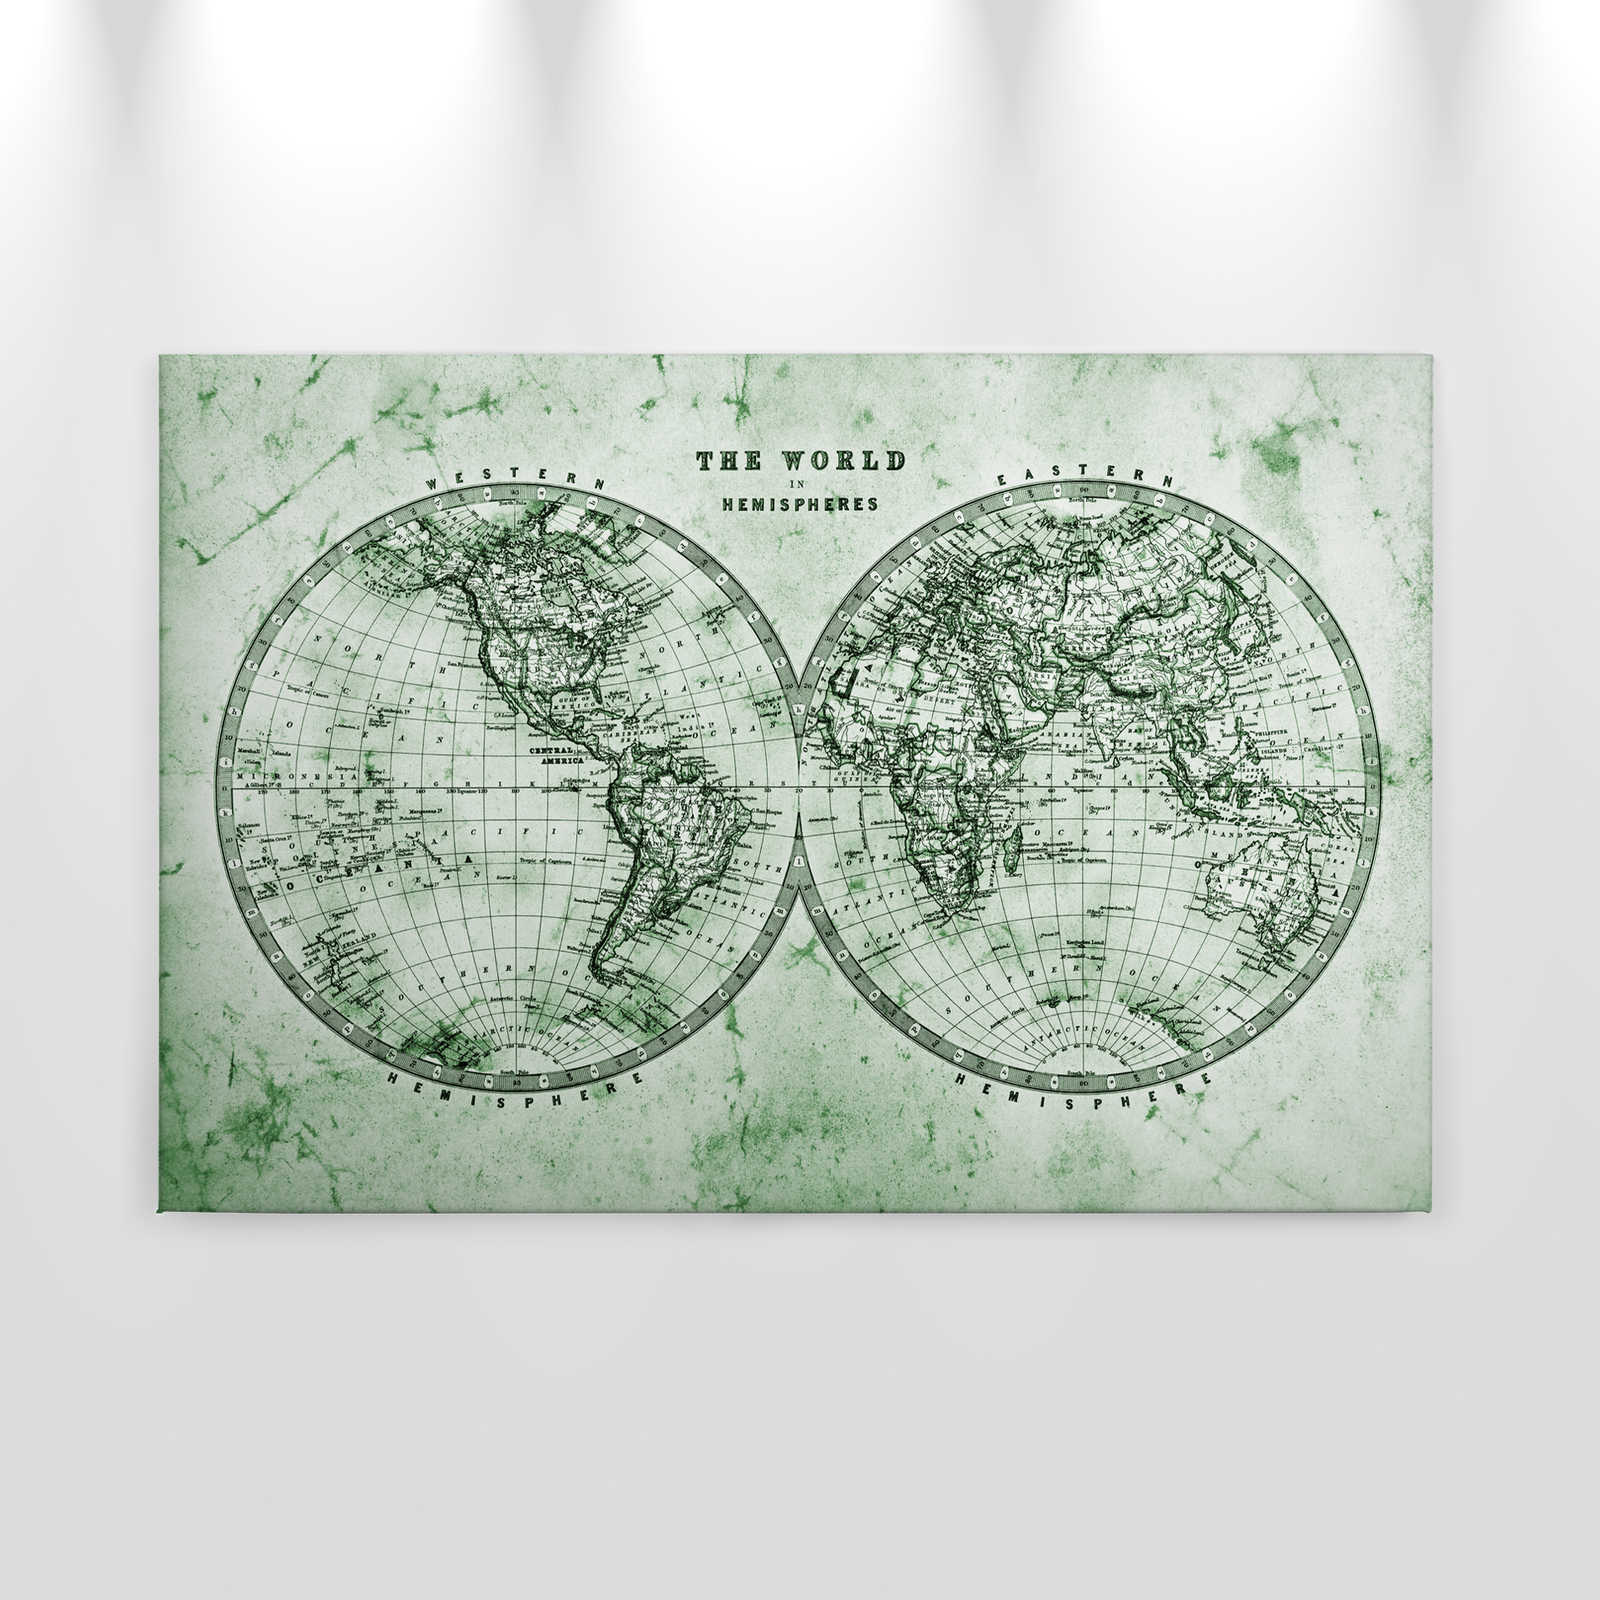             Canvas met Vintage Wereldkaart in Hemisferen | groen, grijs, wit - 0.90 m x 0.60 m
        